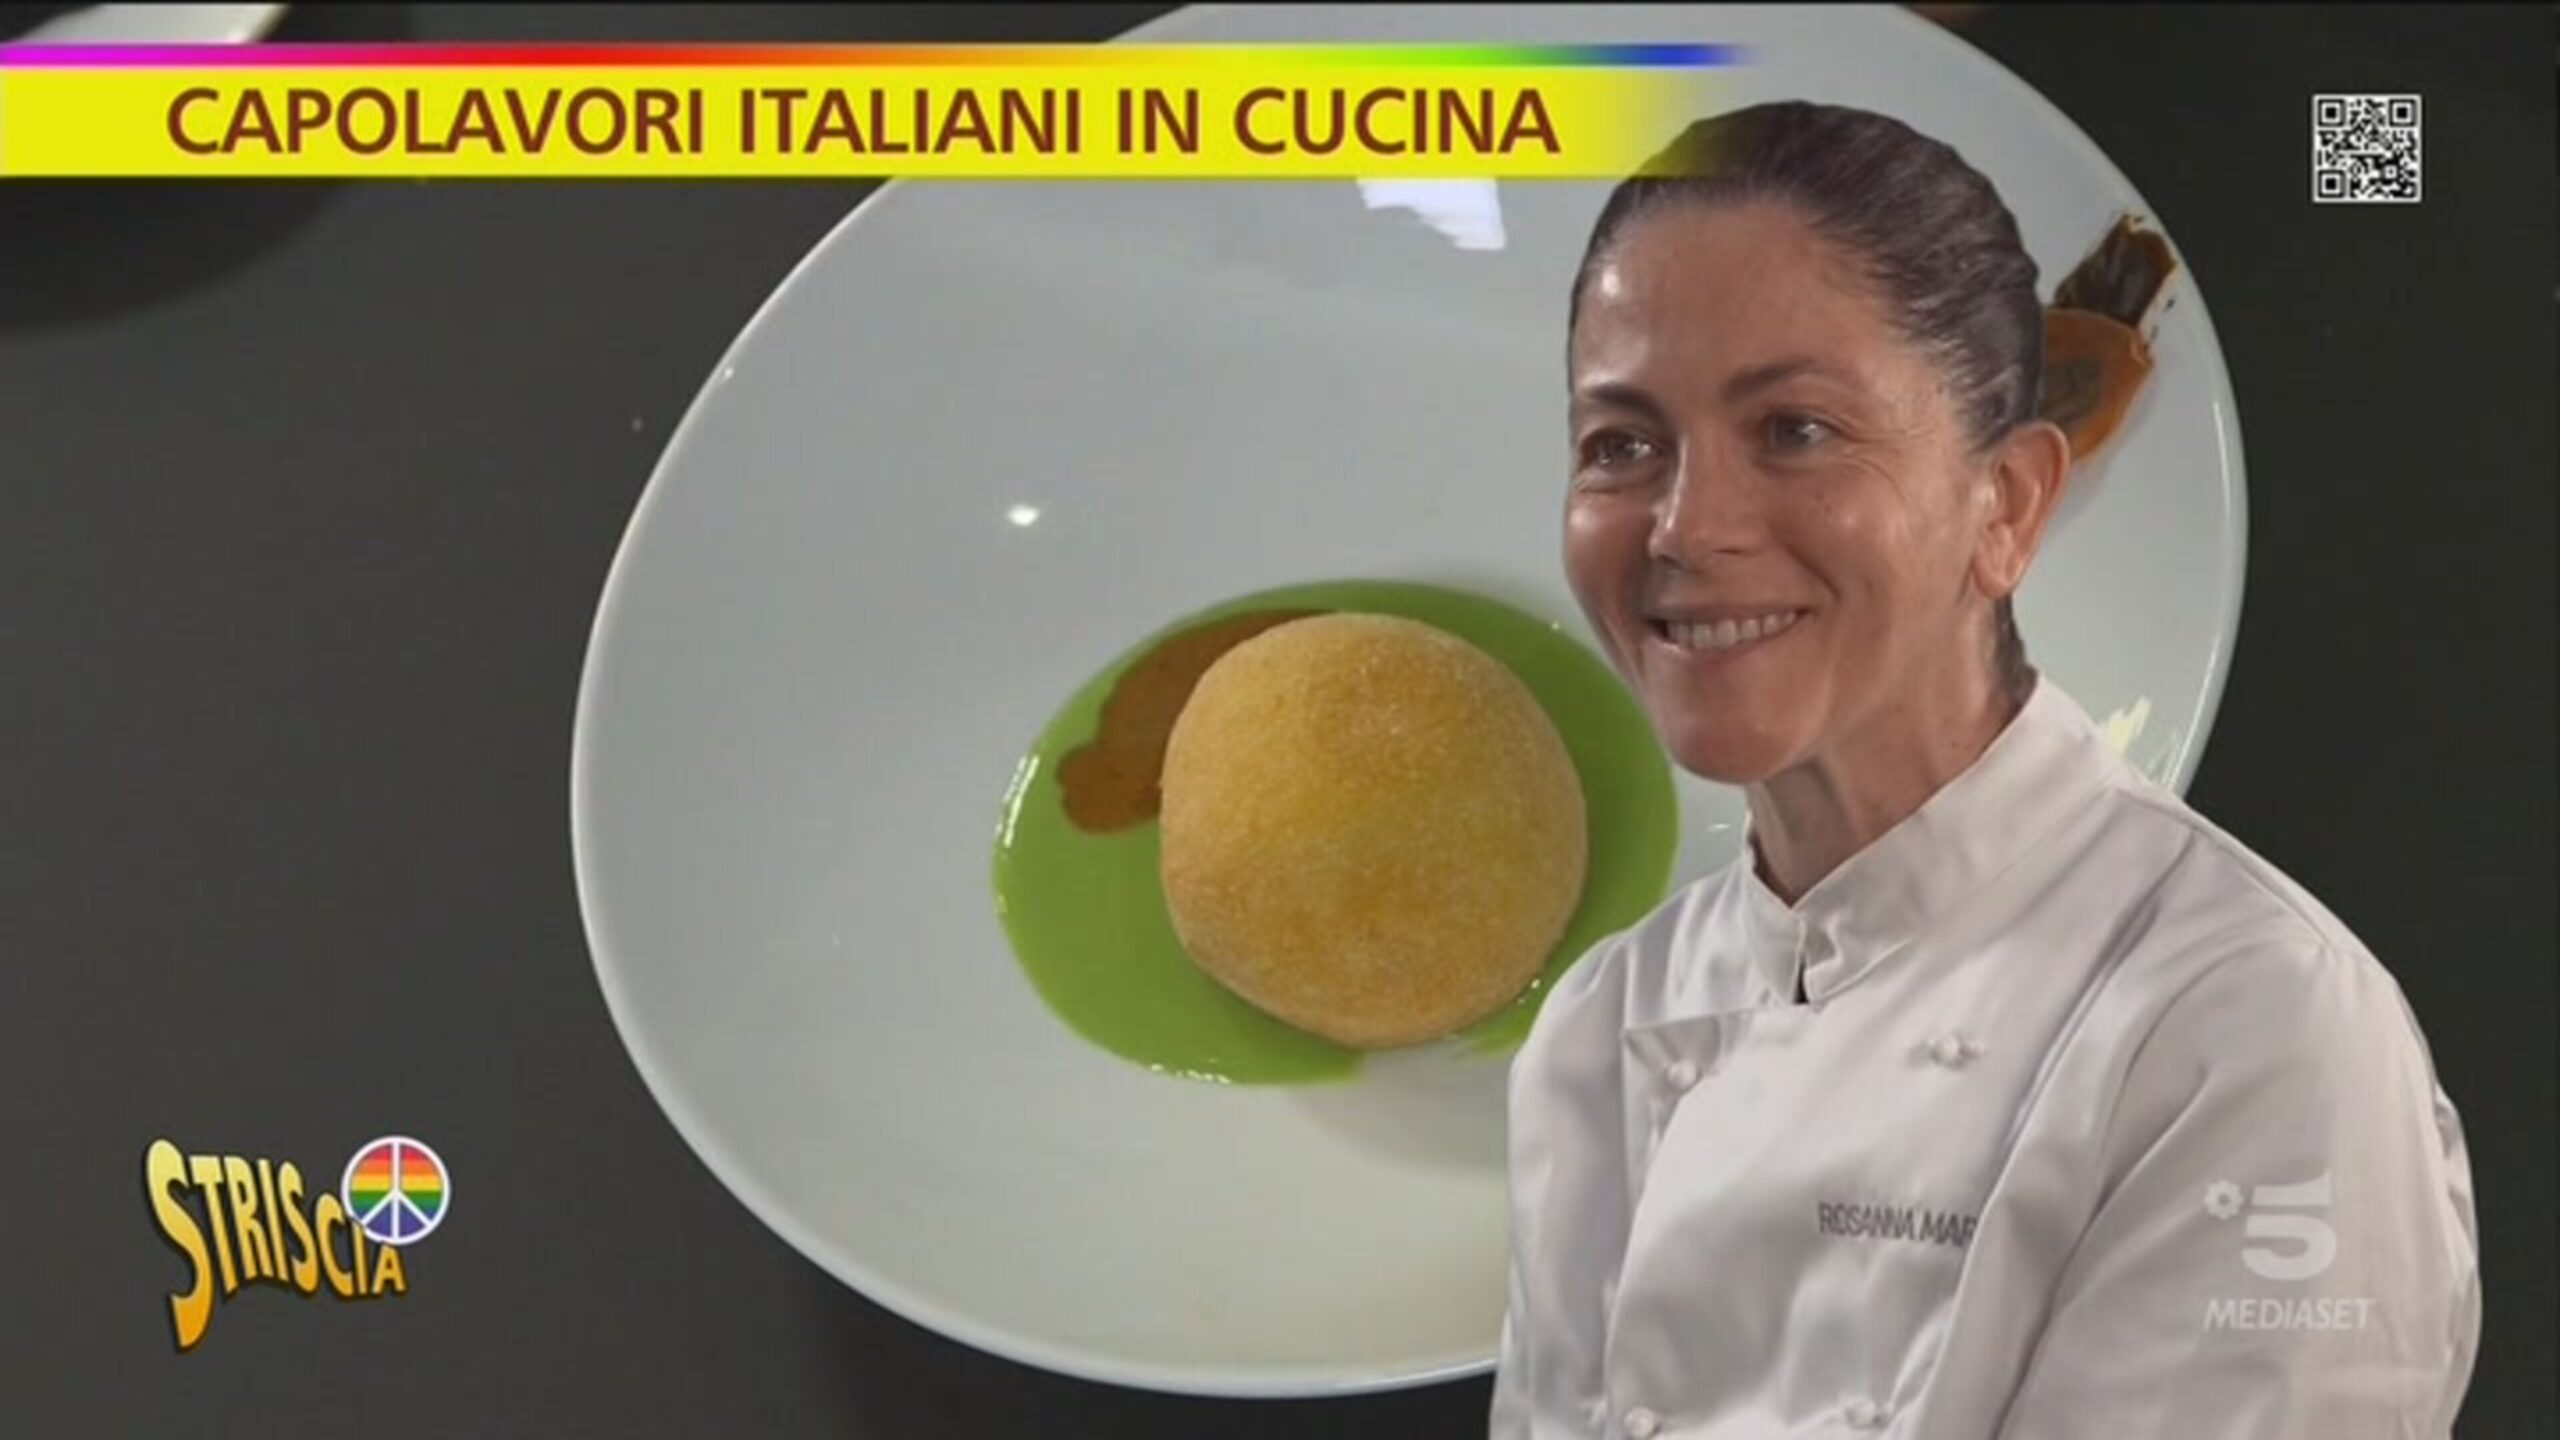 Capolavori italiani in cucina, la Palla di Mozzarella con tagliolini al basilico